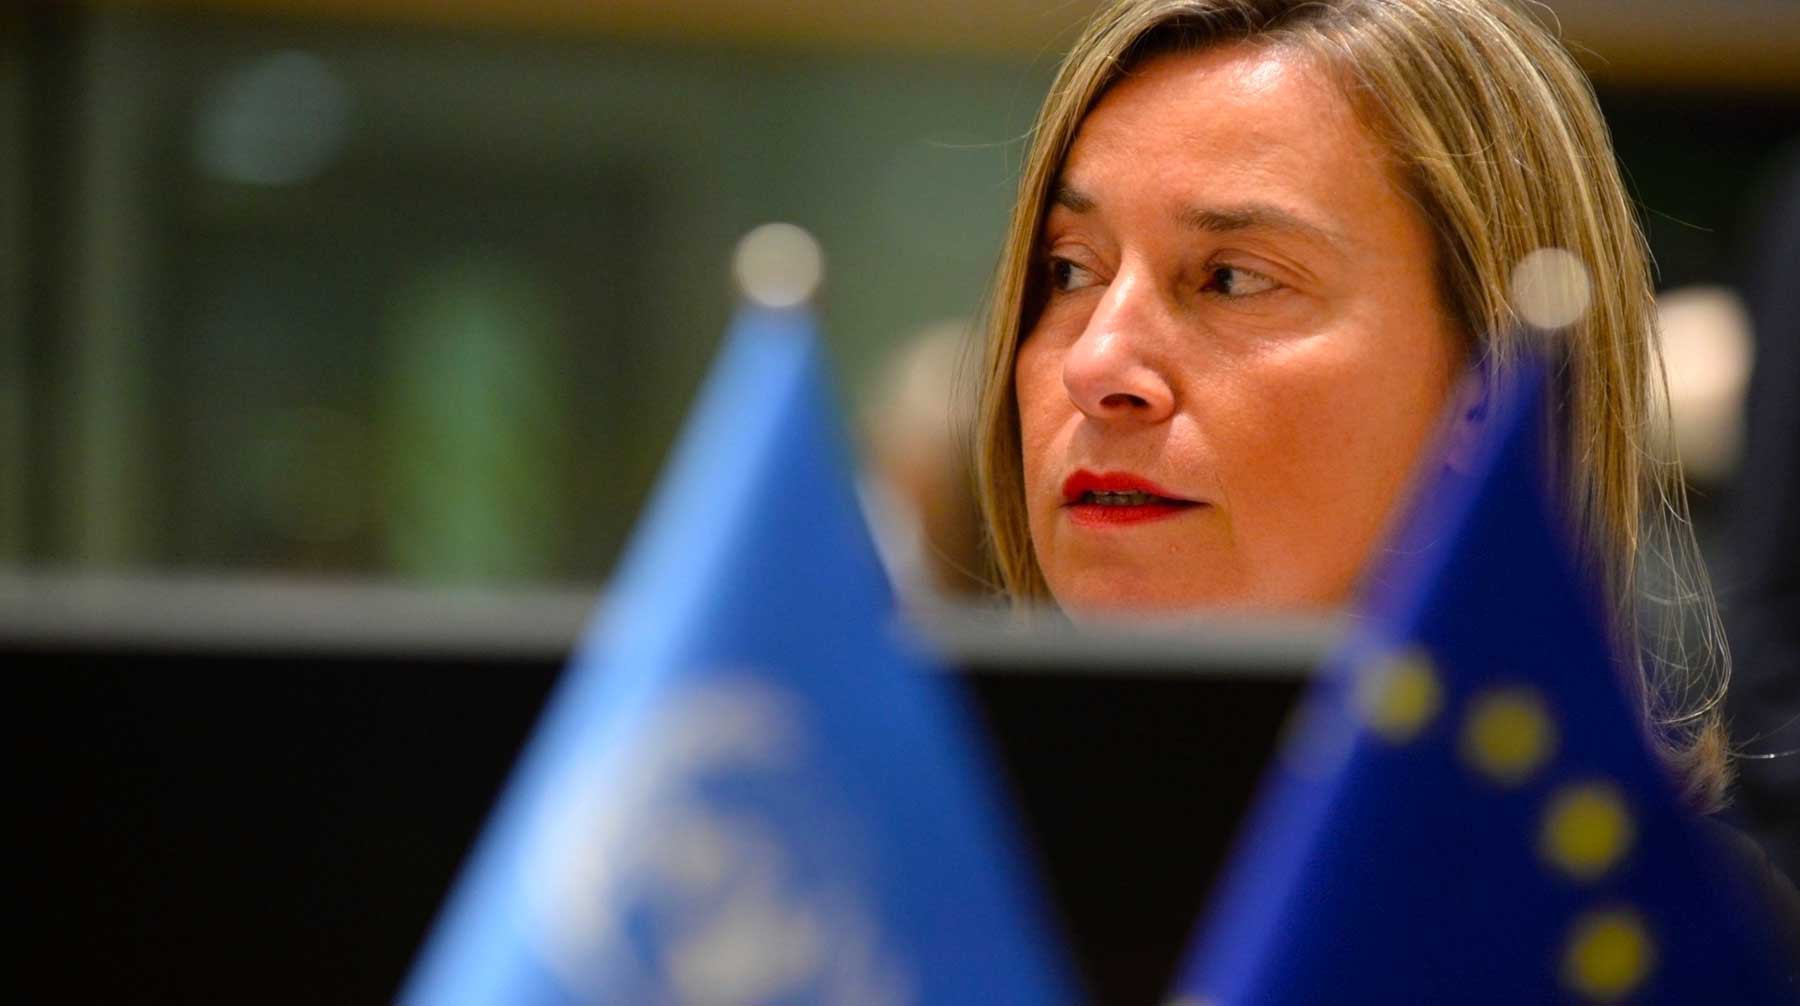 Dailystorm - Еврокомиссия объявила об удачном для ЕС обмене «санкционными ударами» с Россией